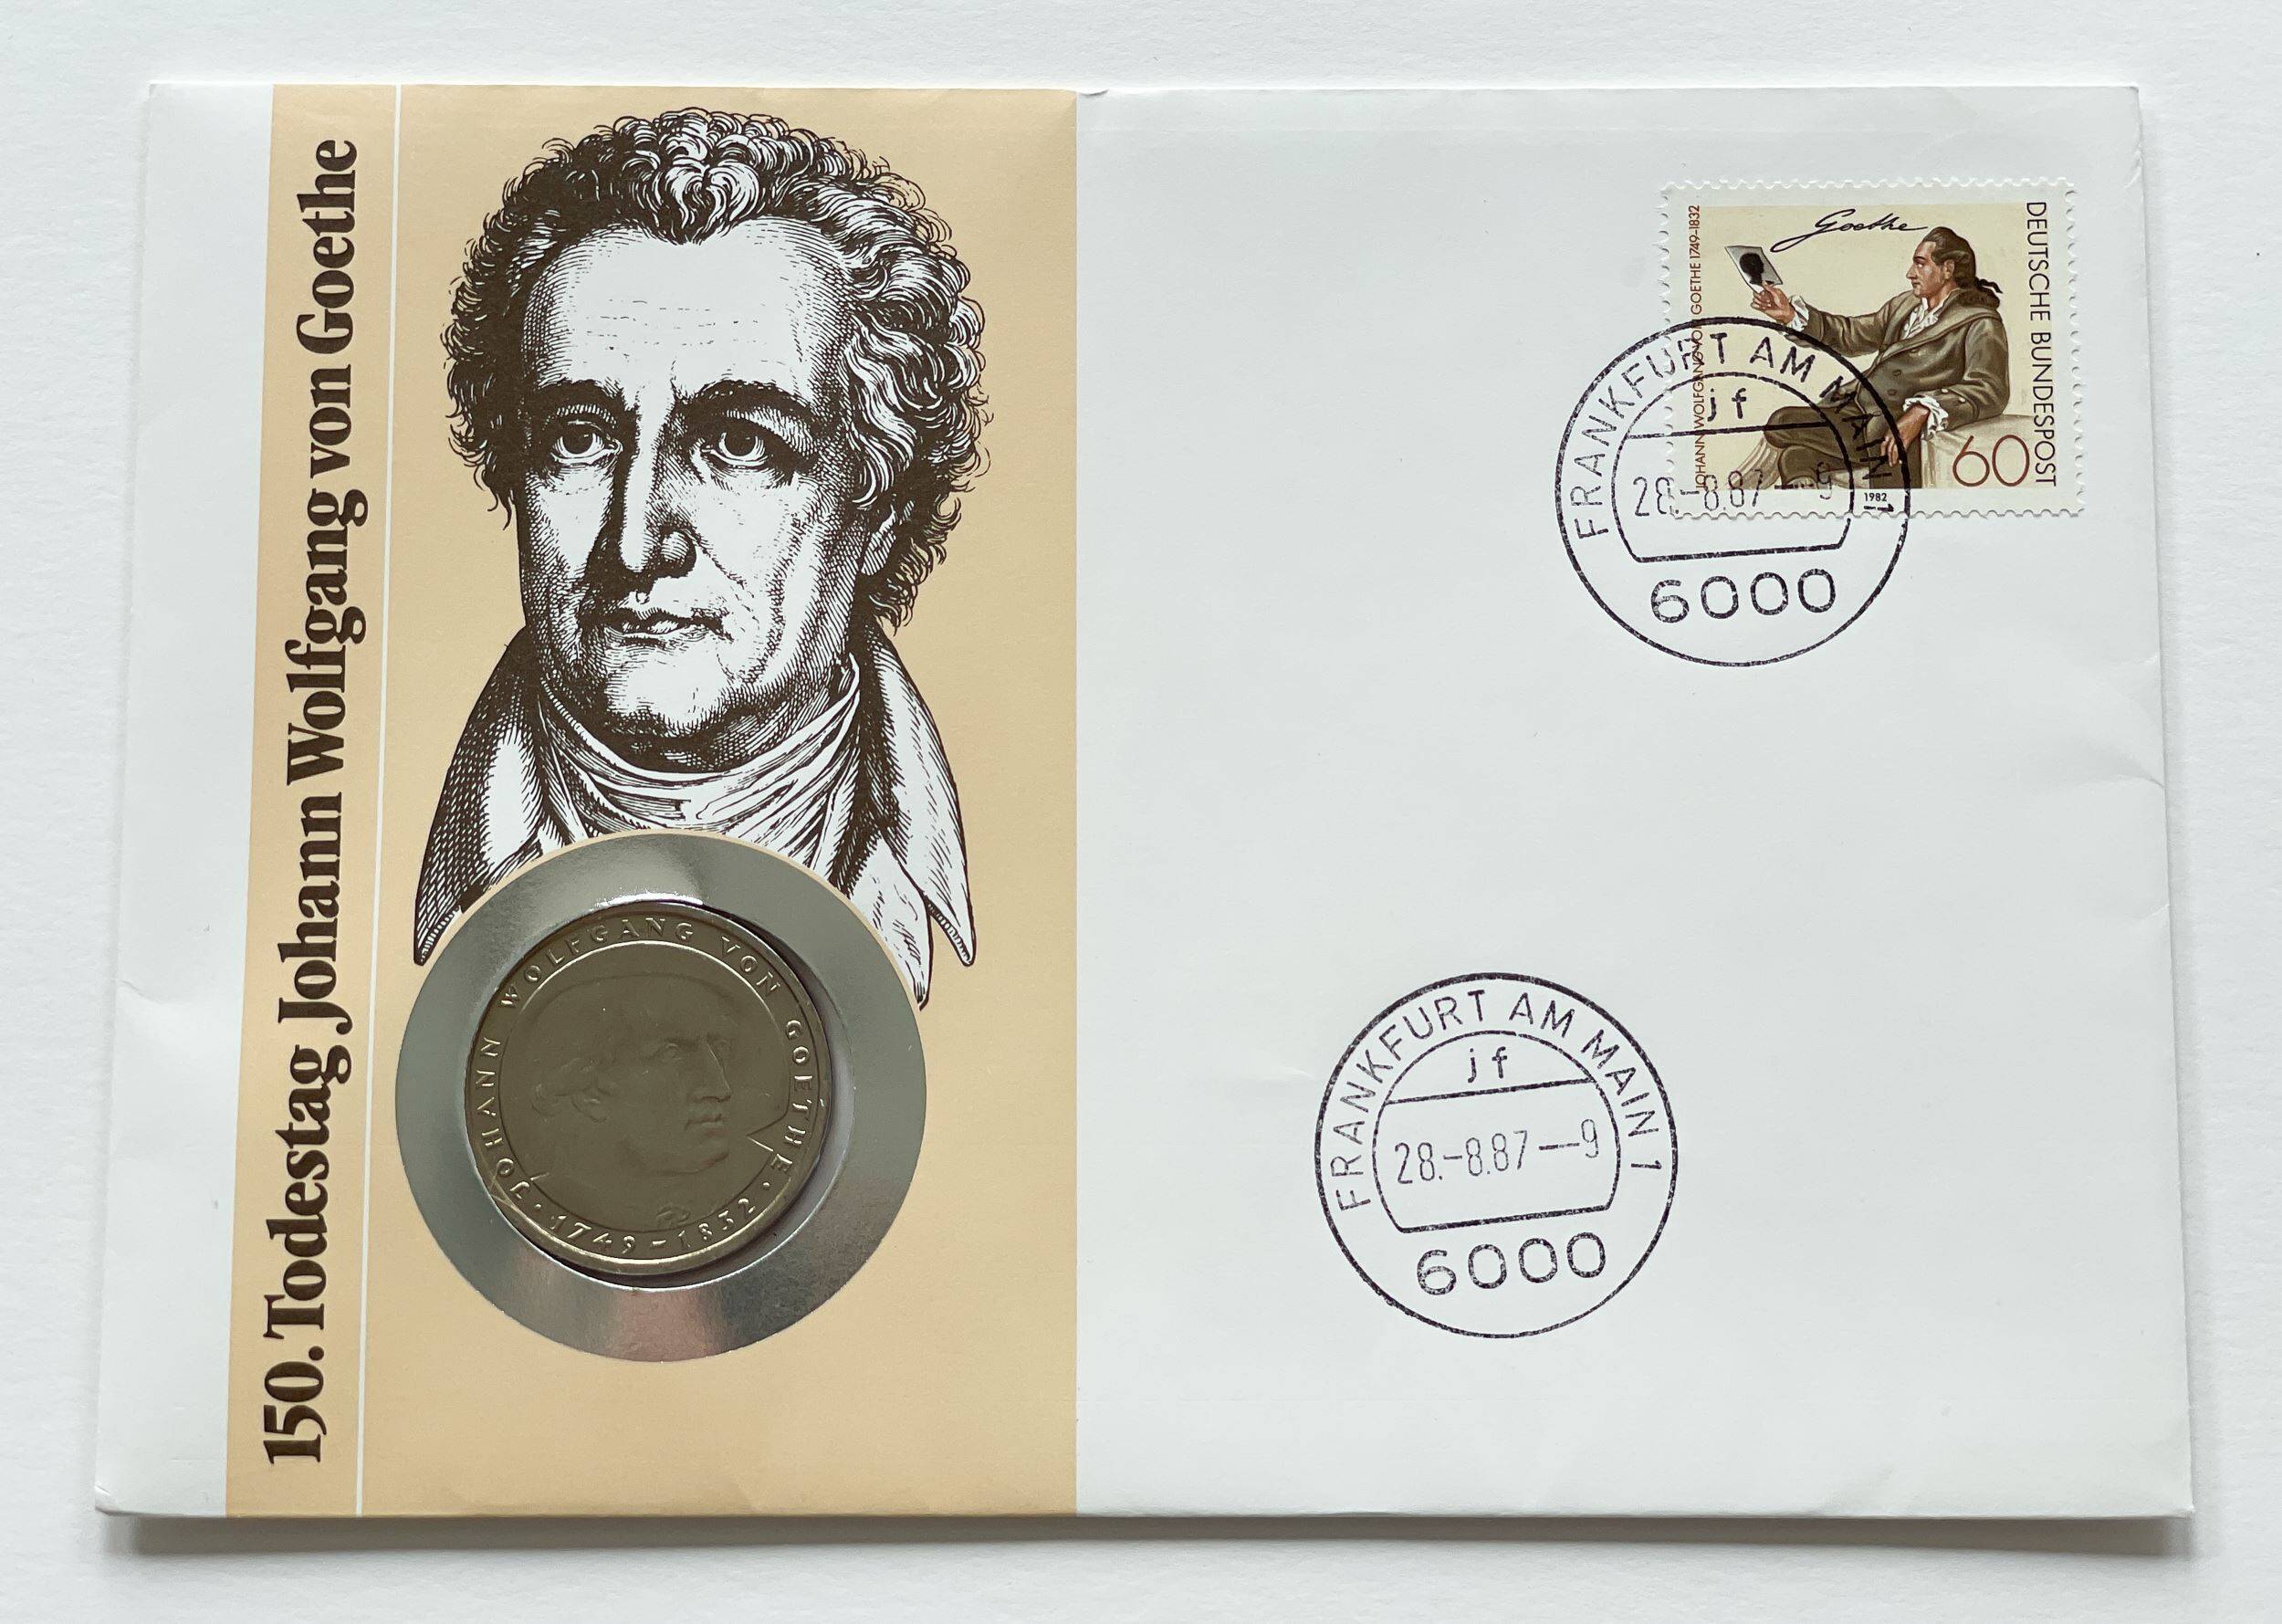 BRD 1982/1987 Numisbrief 150. Todestag Johann Wolfgang von Goethe